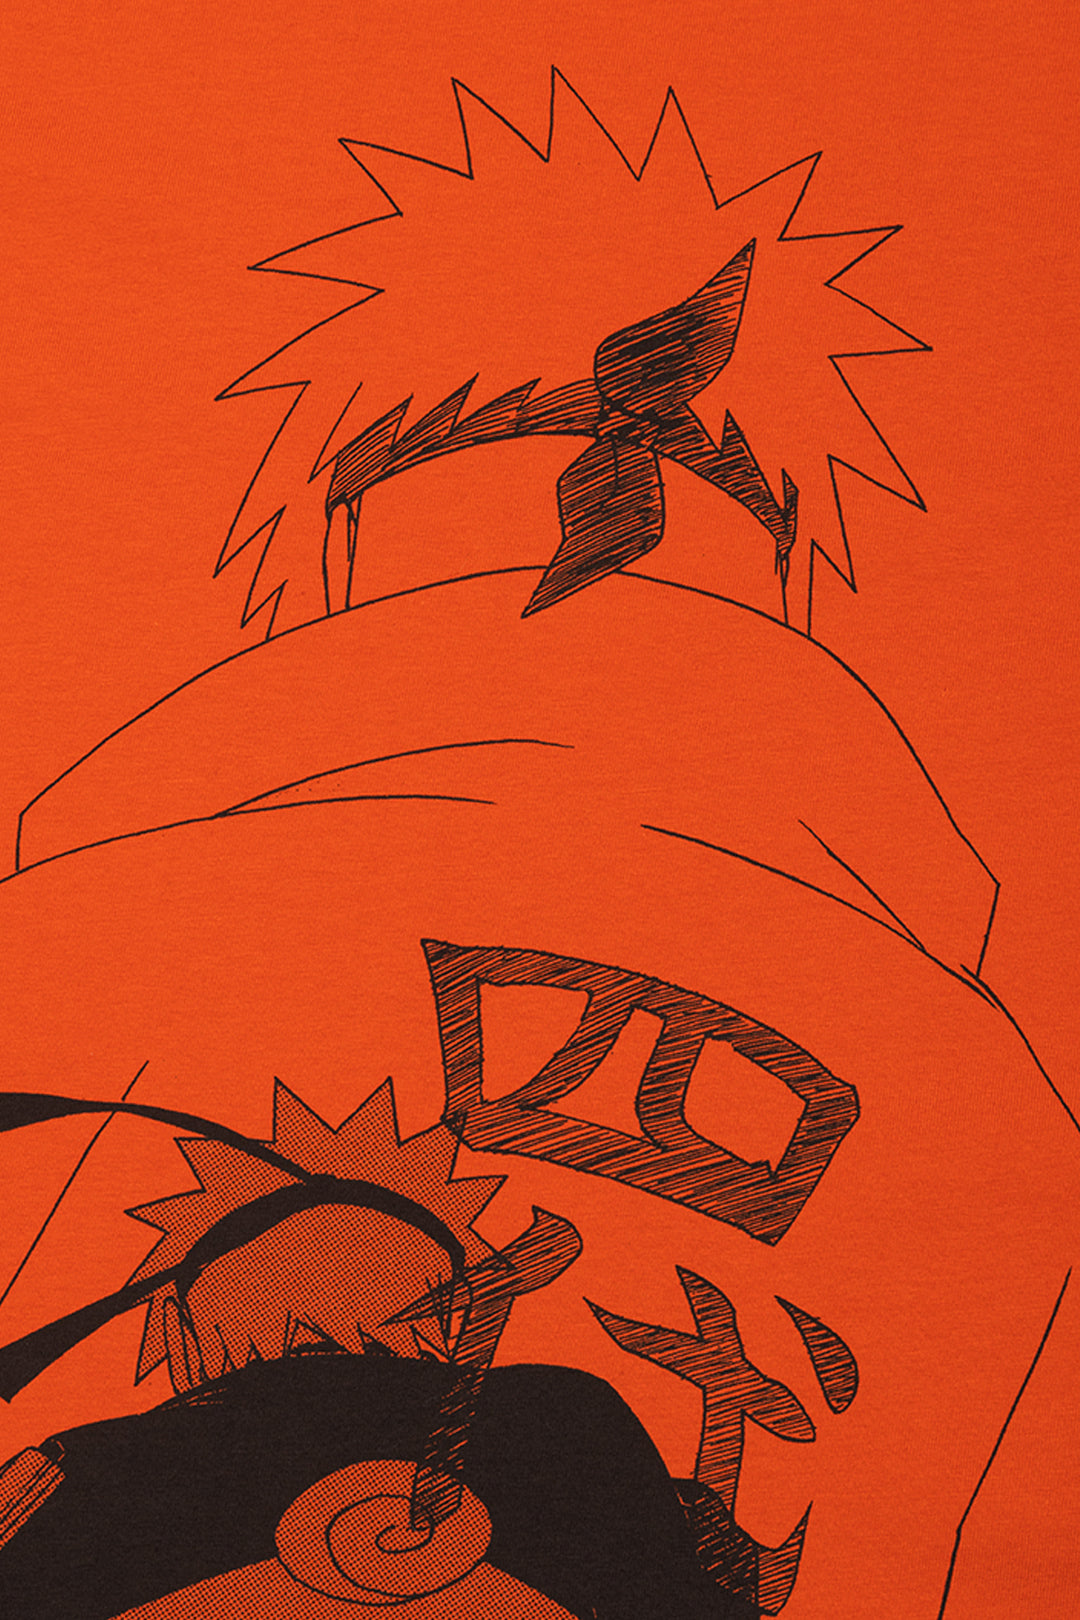 Naruto Jutsu Pose Tee - Orange